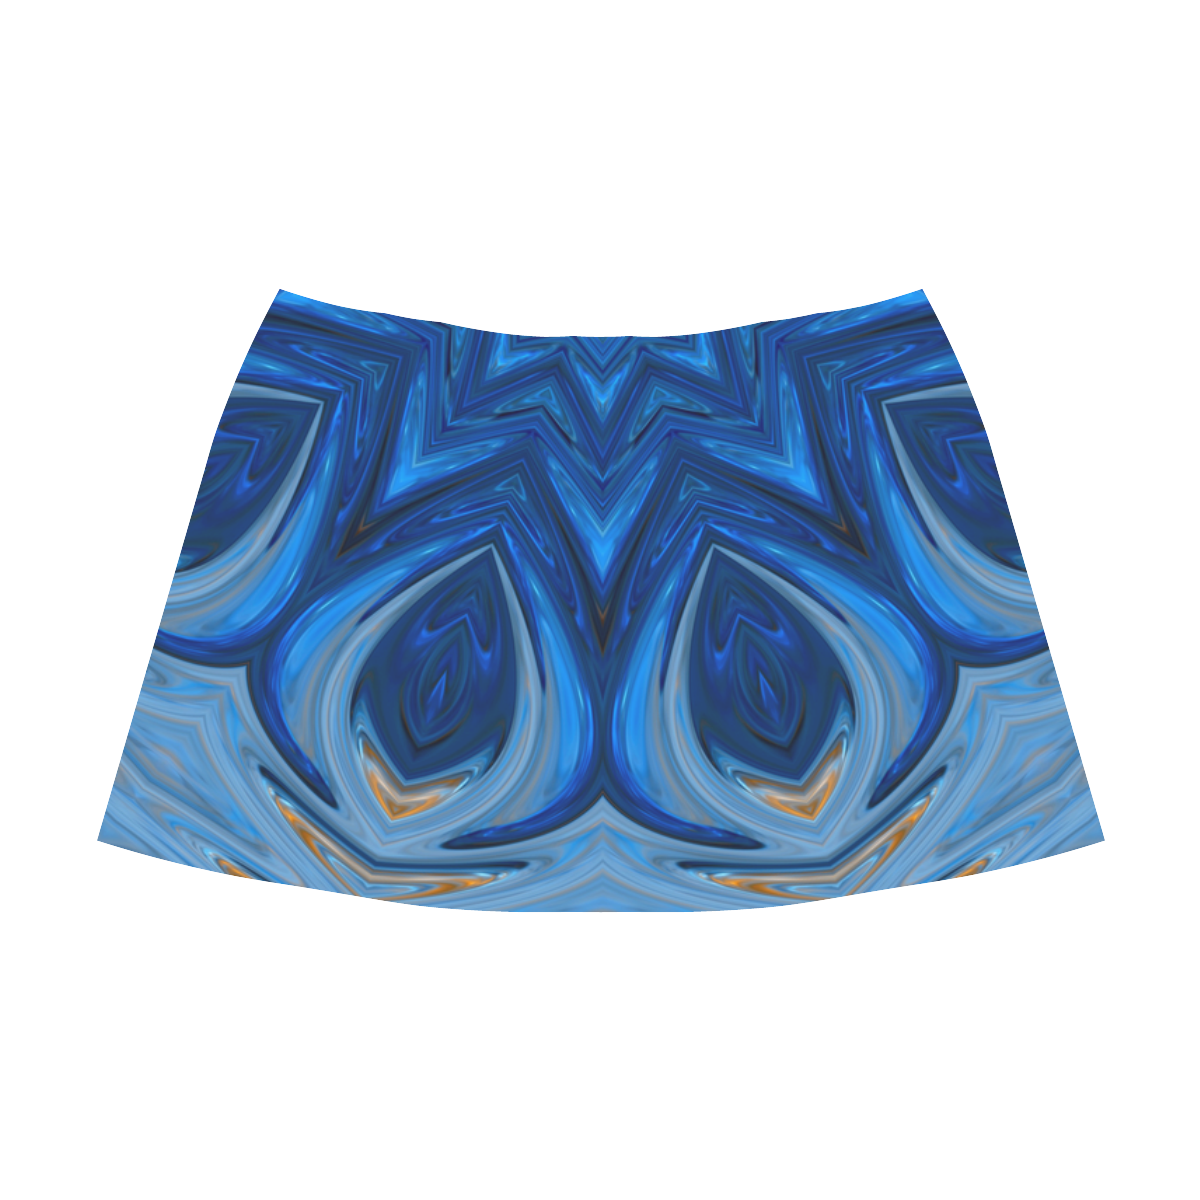 Blue Blossom Mandala Mnemosyne Women's Crepe Skirt (Model D16)